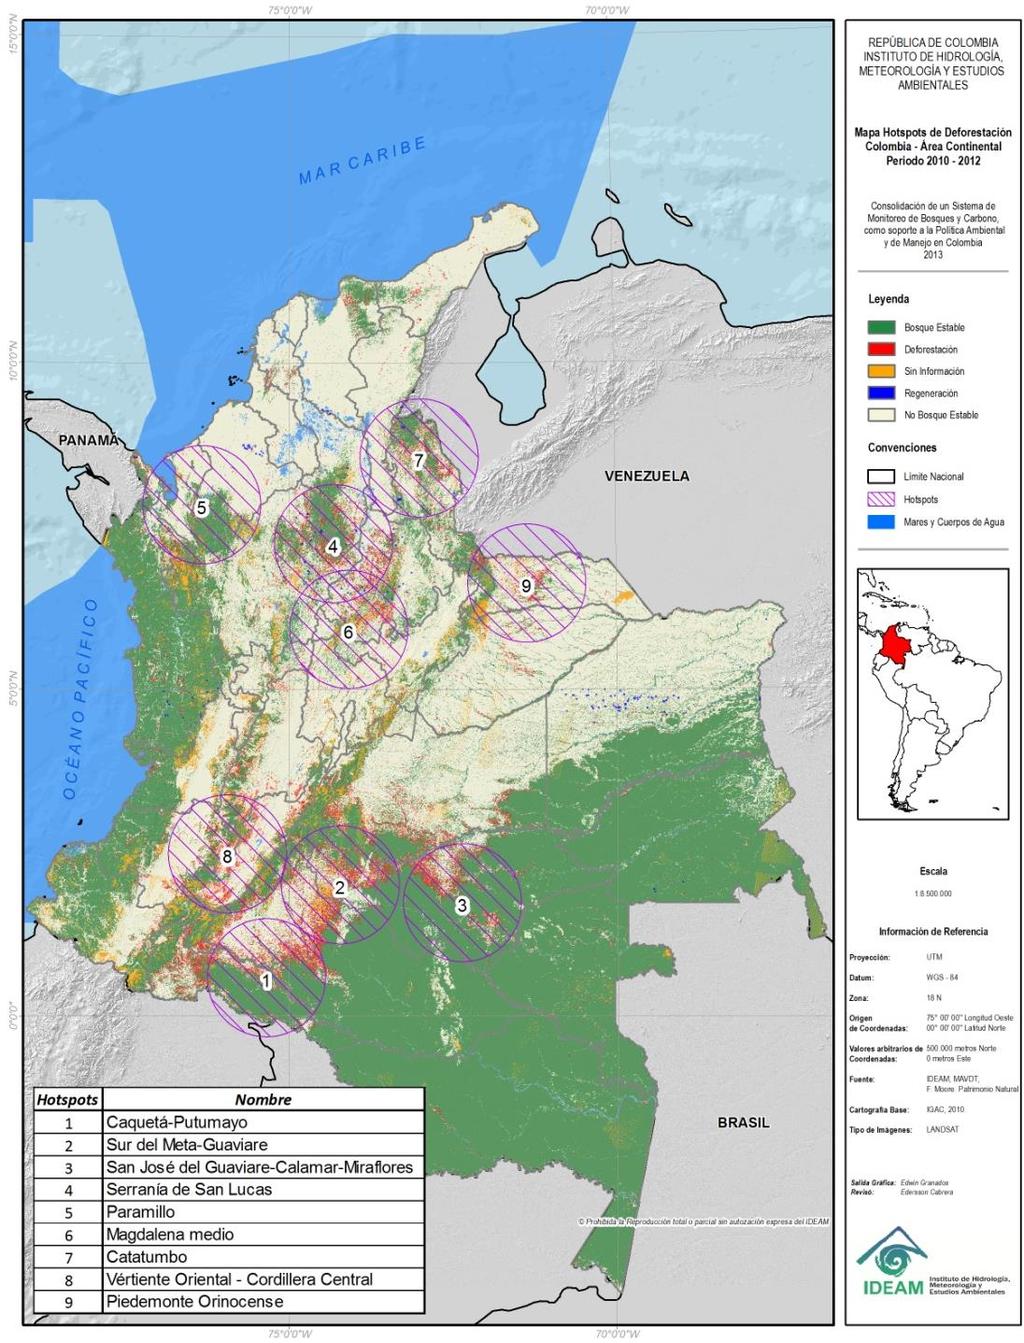 Puntos Activos de Deforestación Años 2011-2012 Las áreas núcleo de deforestación donde se concentra la mayor pérdida de bosque son: Caquetá-Putumayo, Meta-Guaviare Eje San José del Guaviare-Calamar-